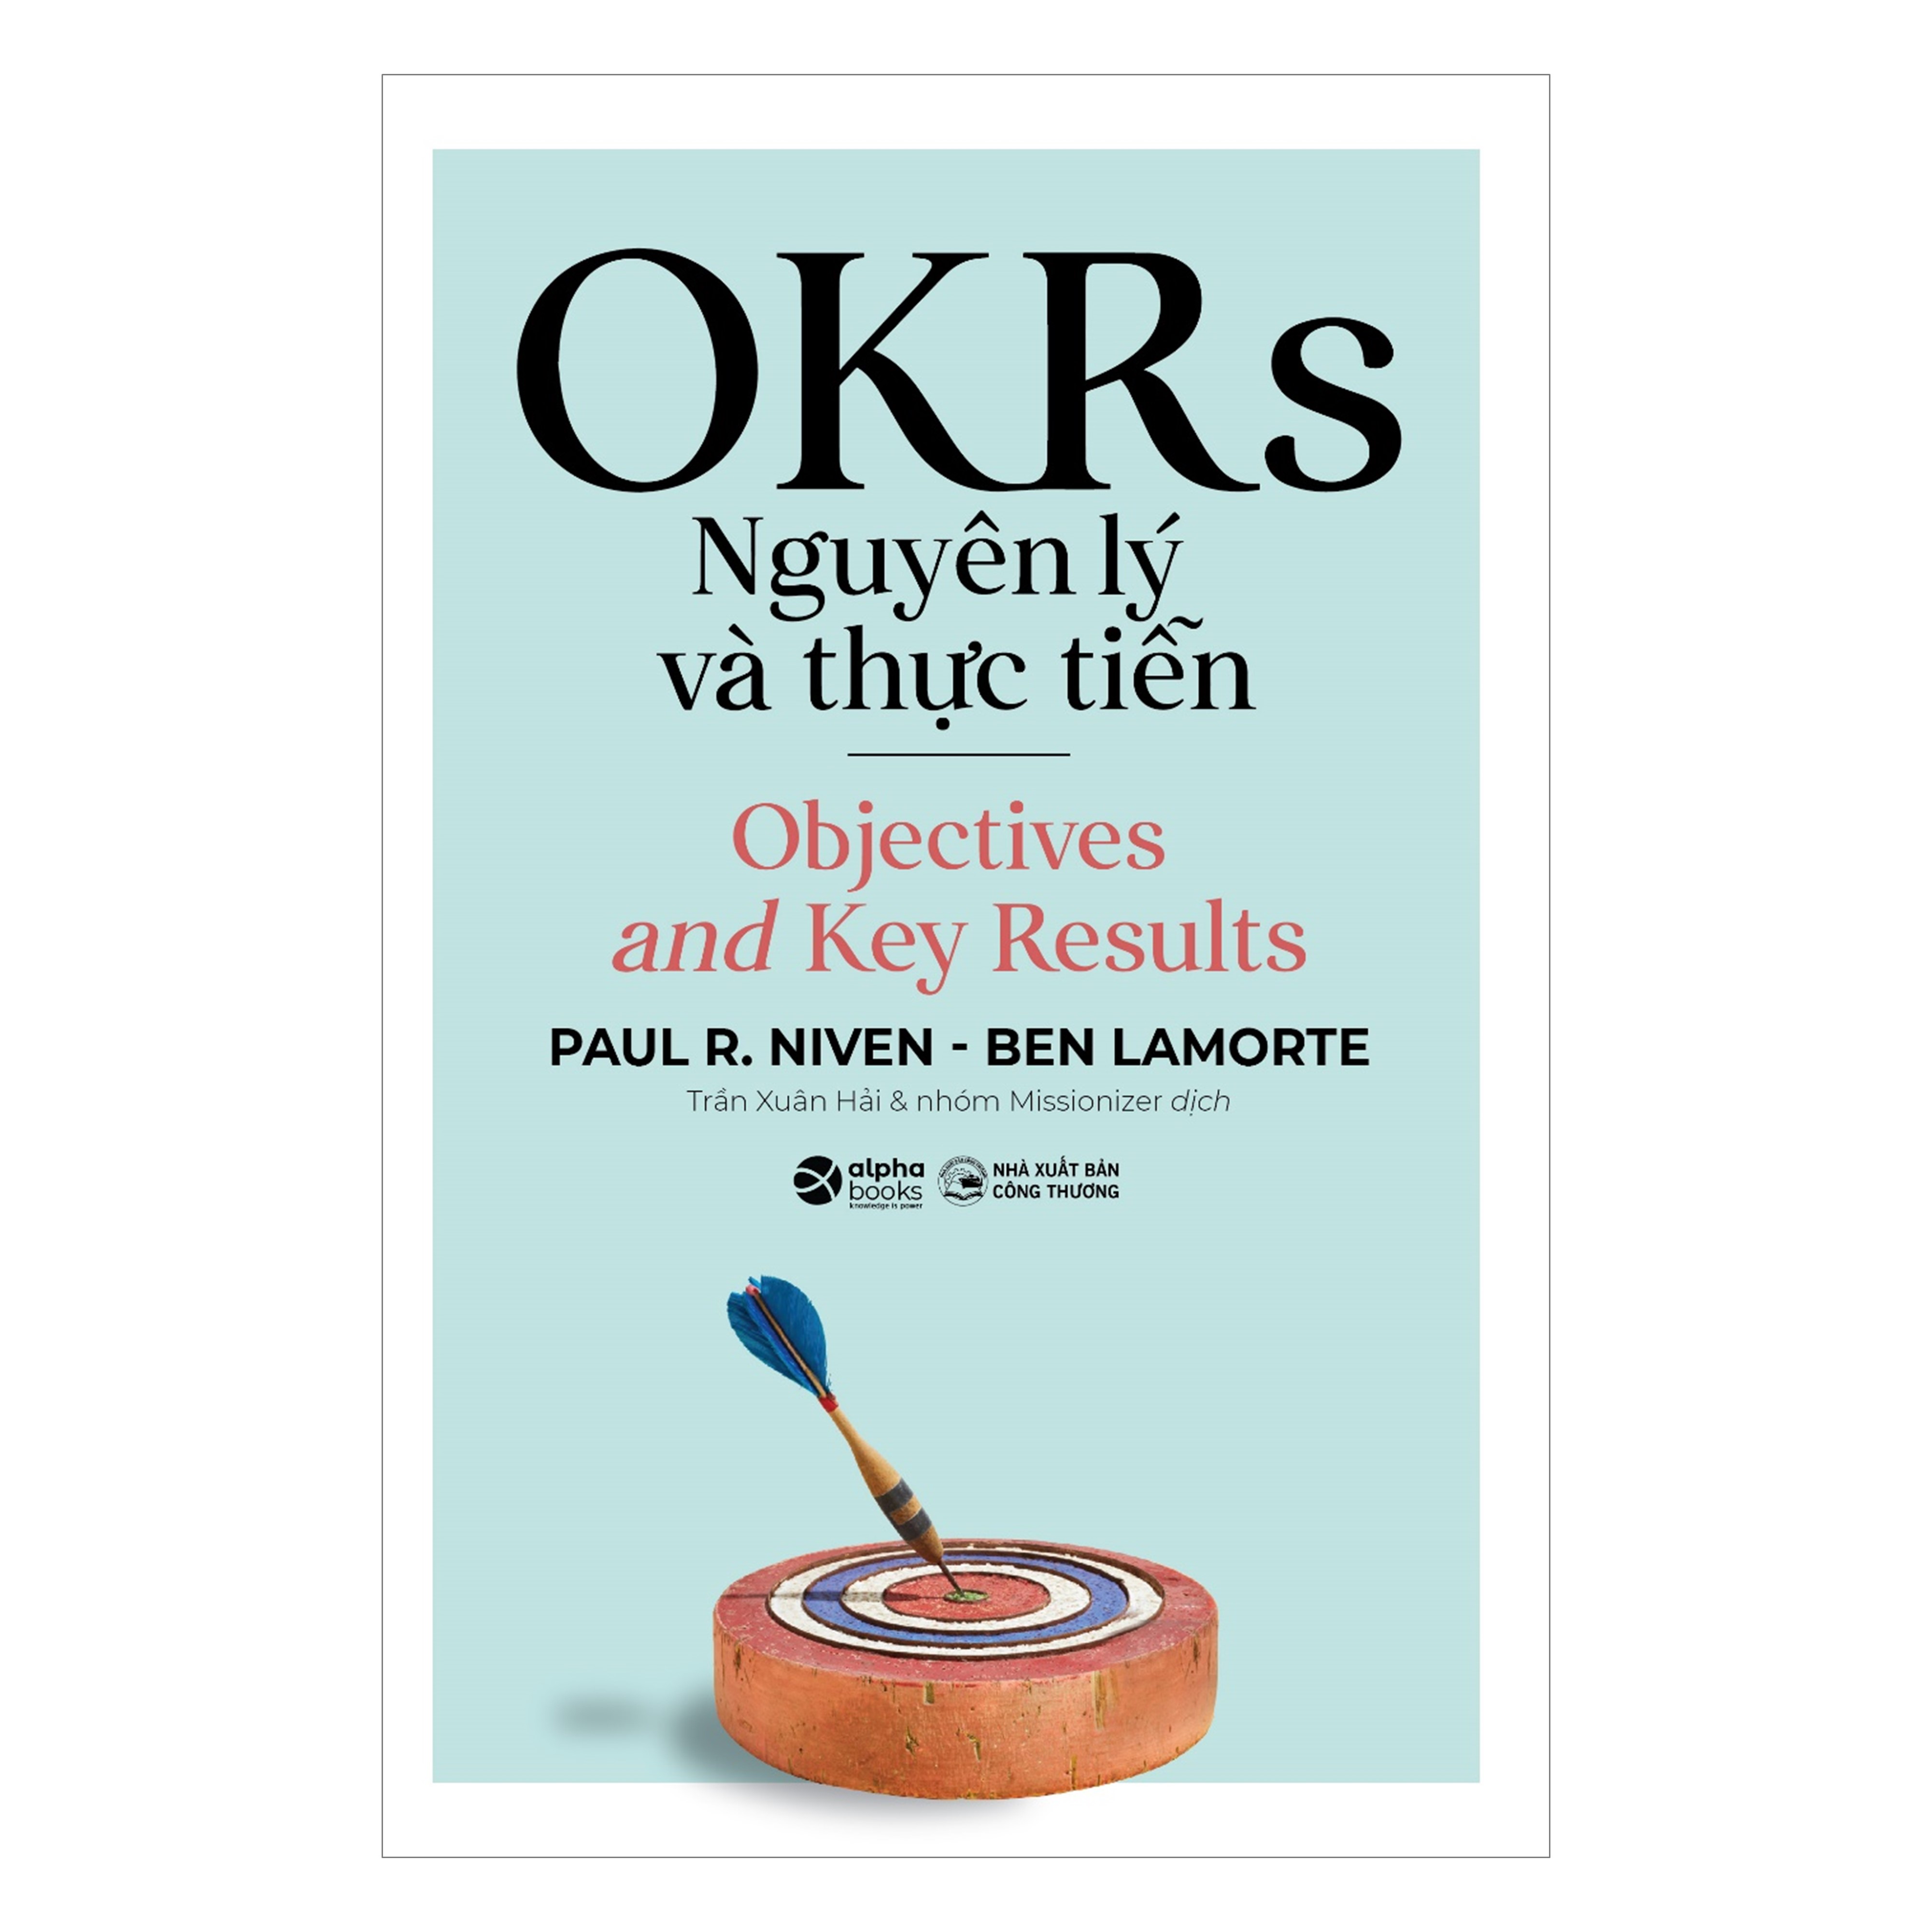 Combo OKRs Nguyên Lý Và Thực Tiễn + Trí Tuệ Xúc Cảm + Chiến Lược Kết Nối